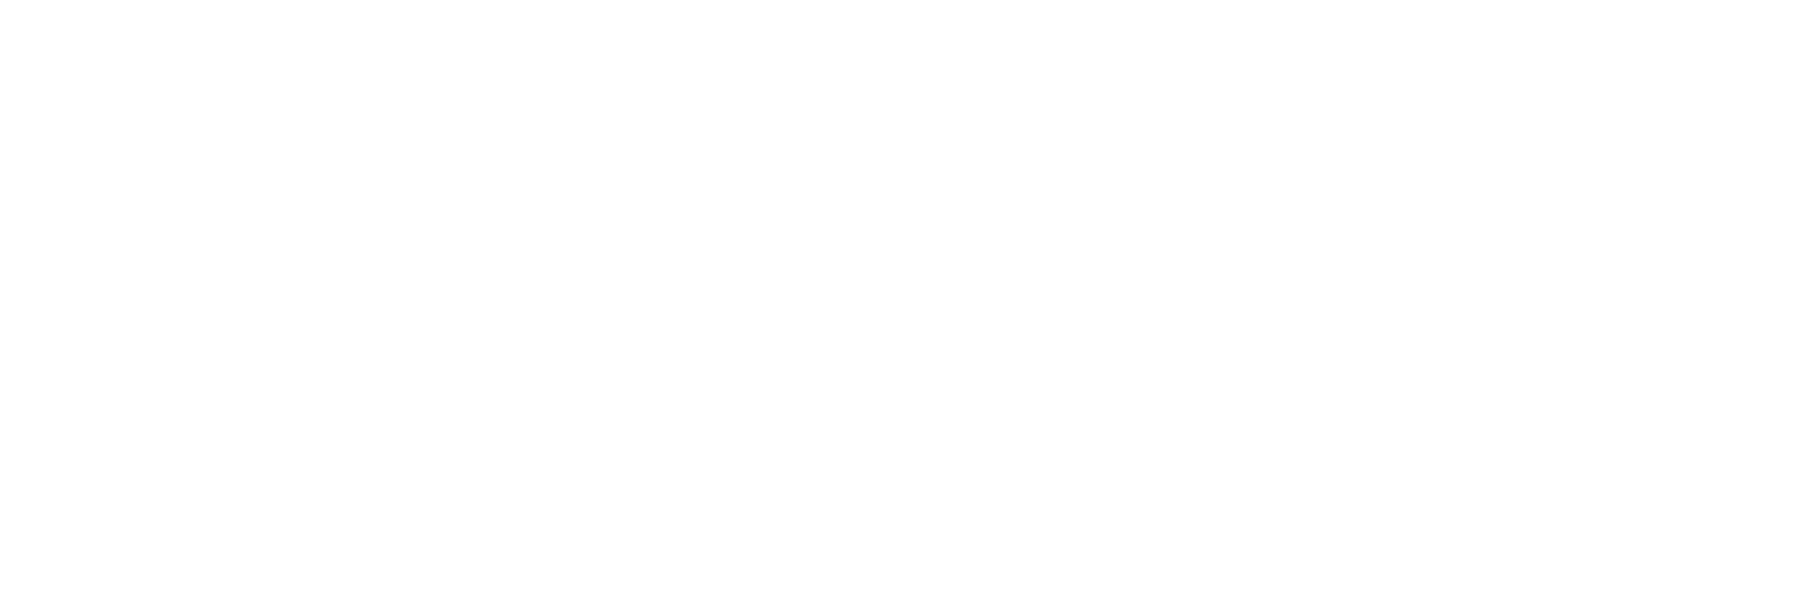 Camp Horizon